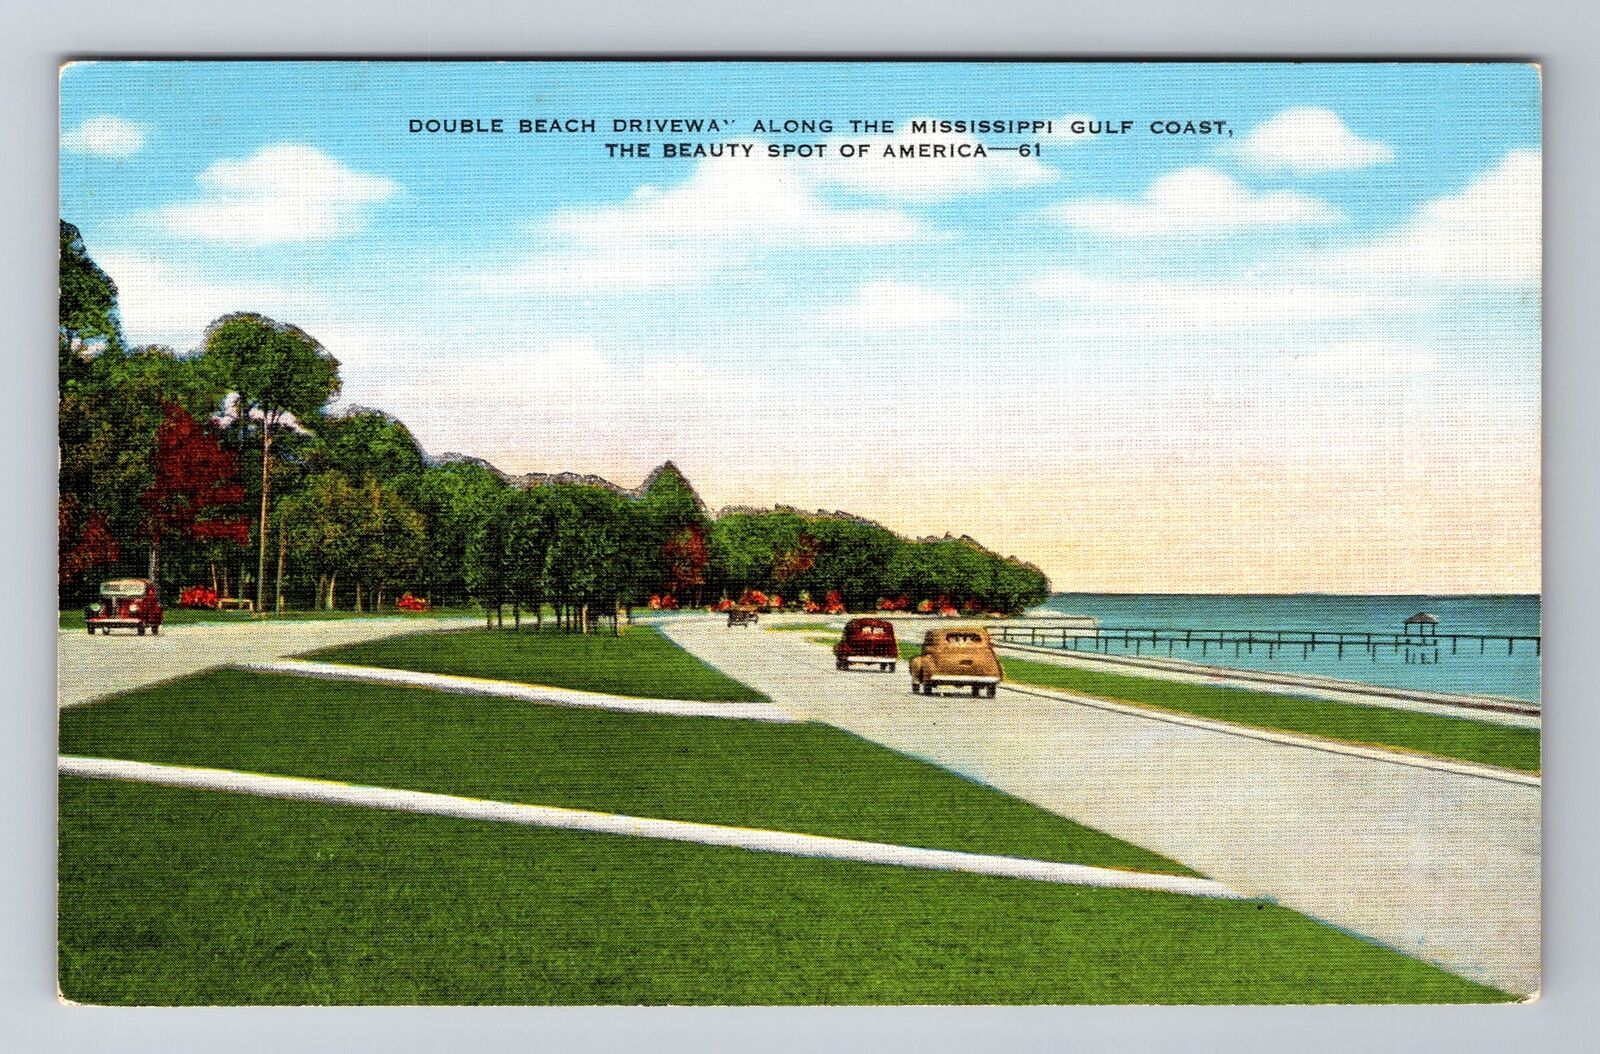 MS-Mississippi, Double Beach Driveway, Antique, Vintage Souvenir Postcard